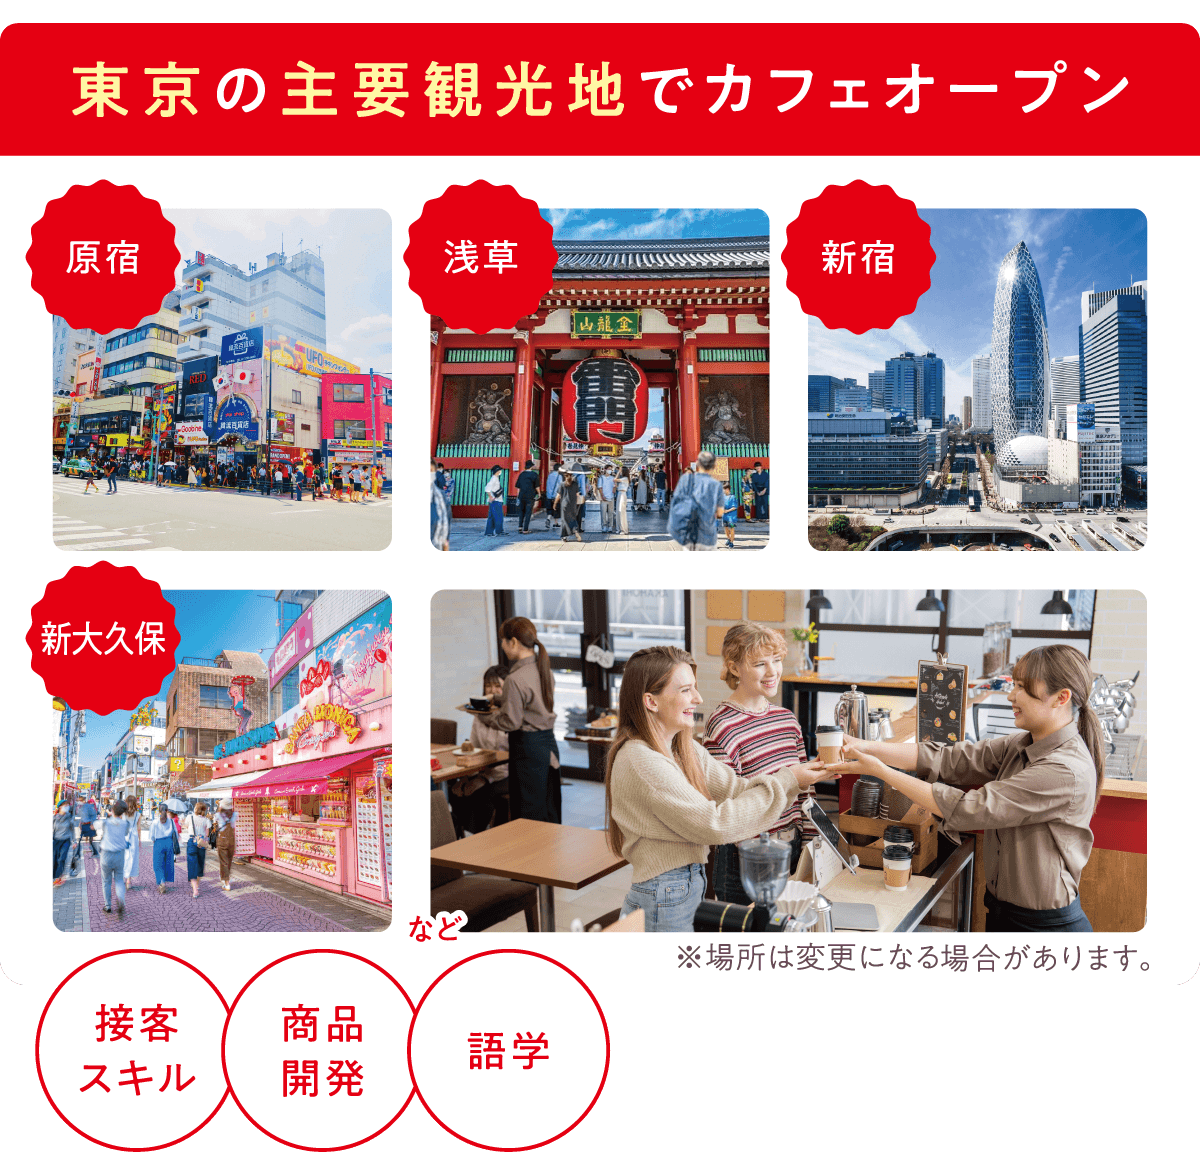 東京の主要観光地でカフェオープン